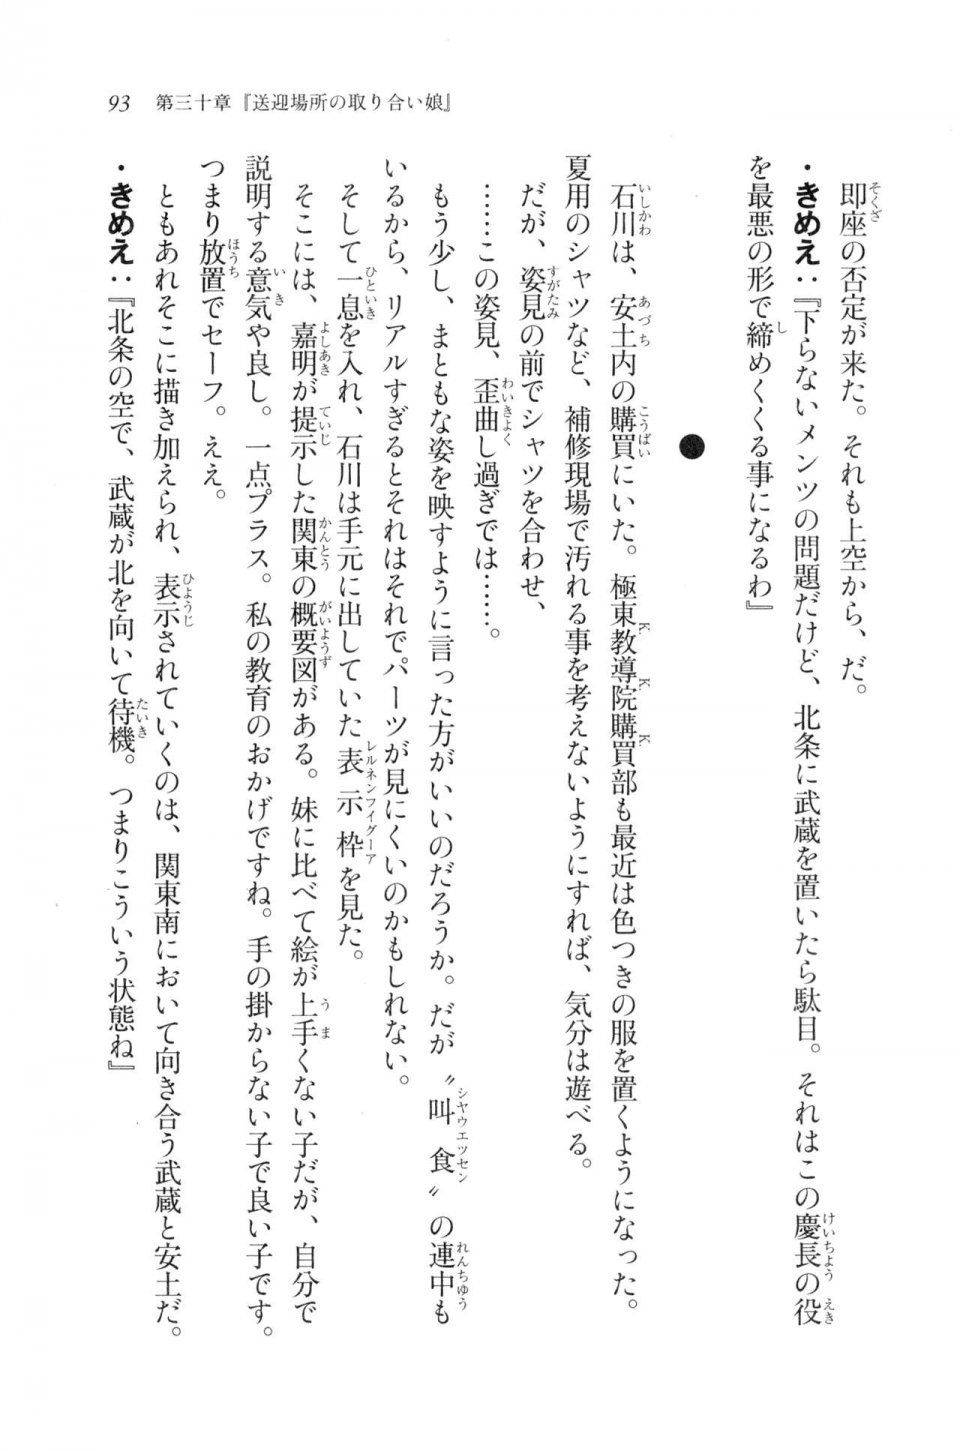 Kyoukai Senjou no Horizon LN Vol 20(8B) - Photo #93